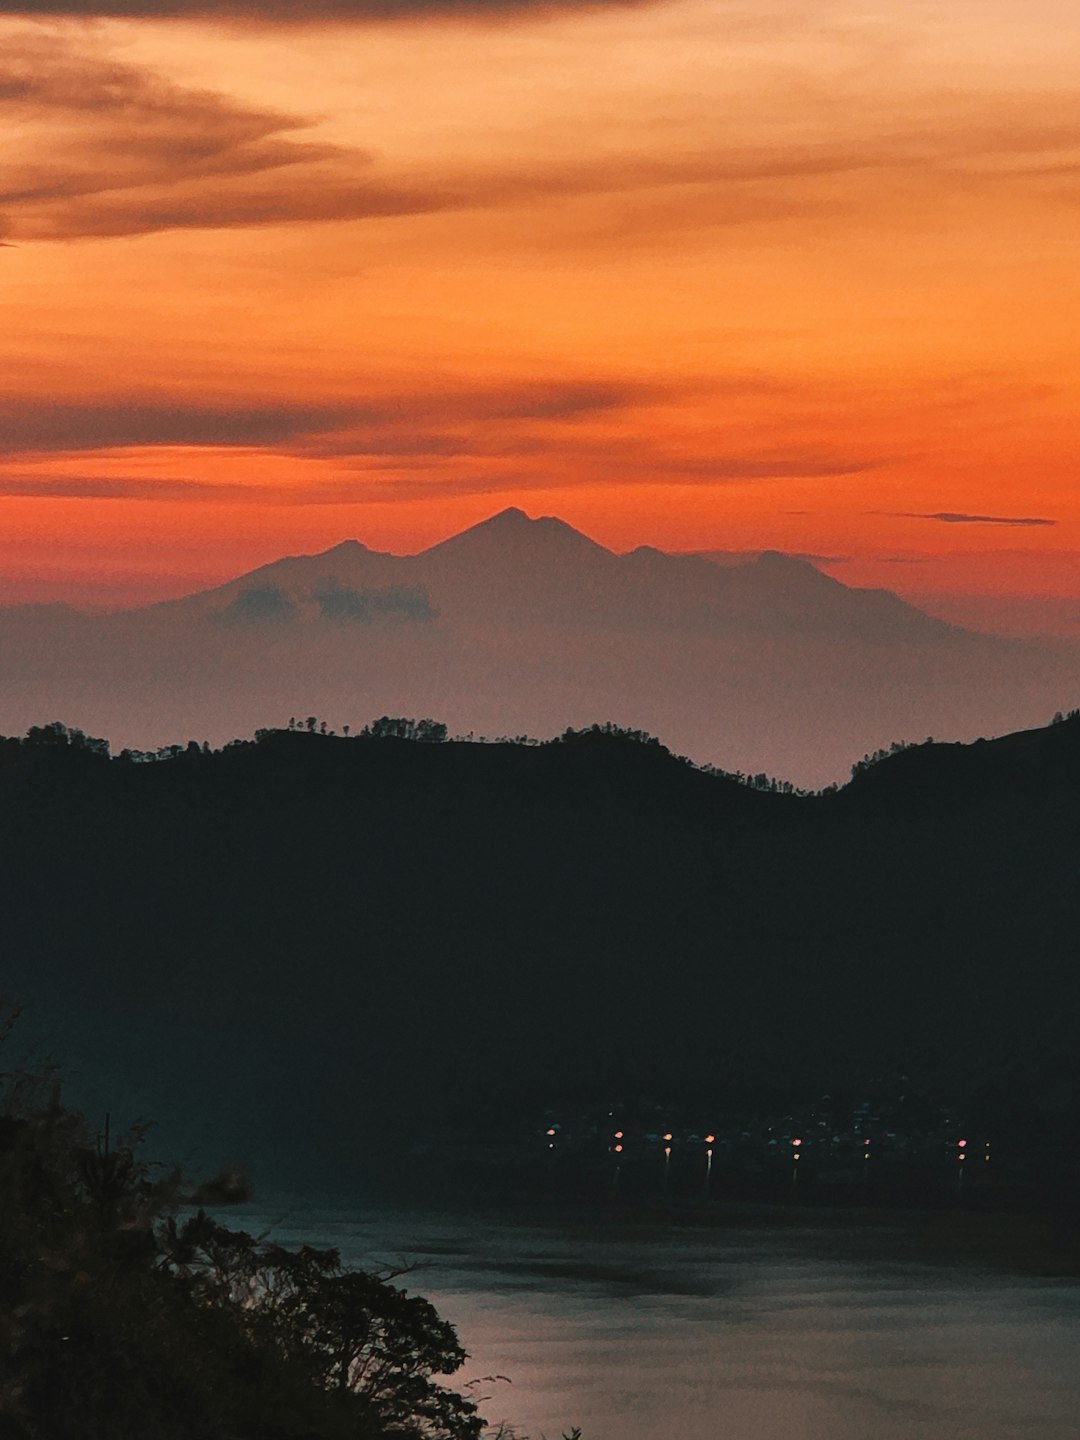 Highland photo spot Bali Tamblingan Lake